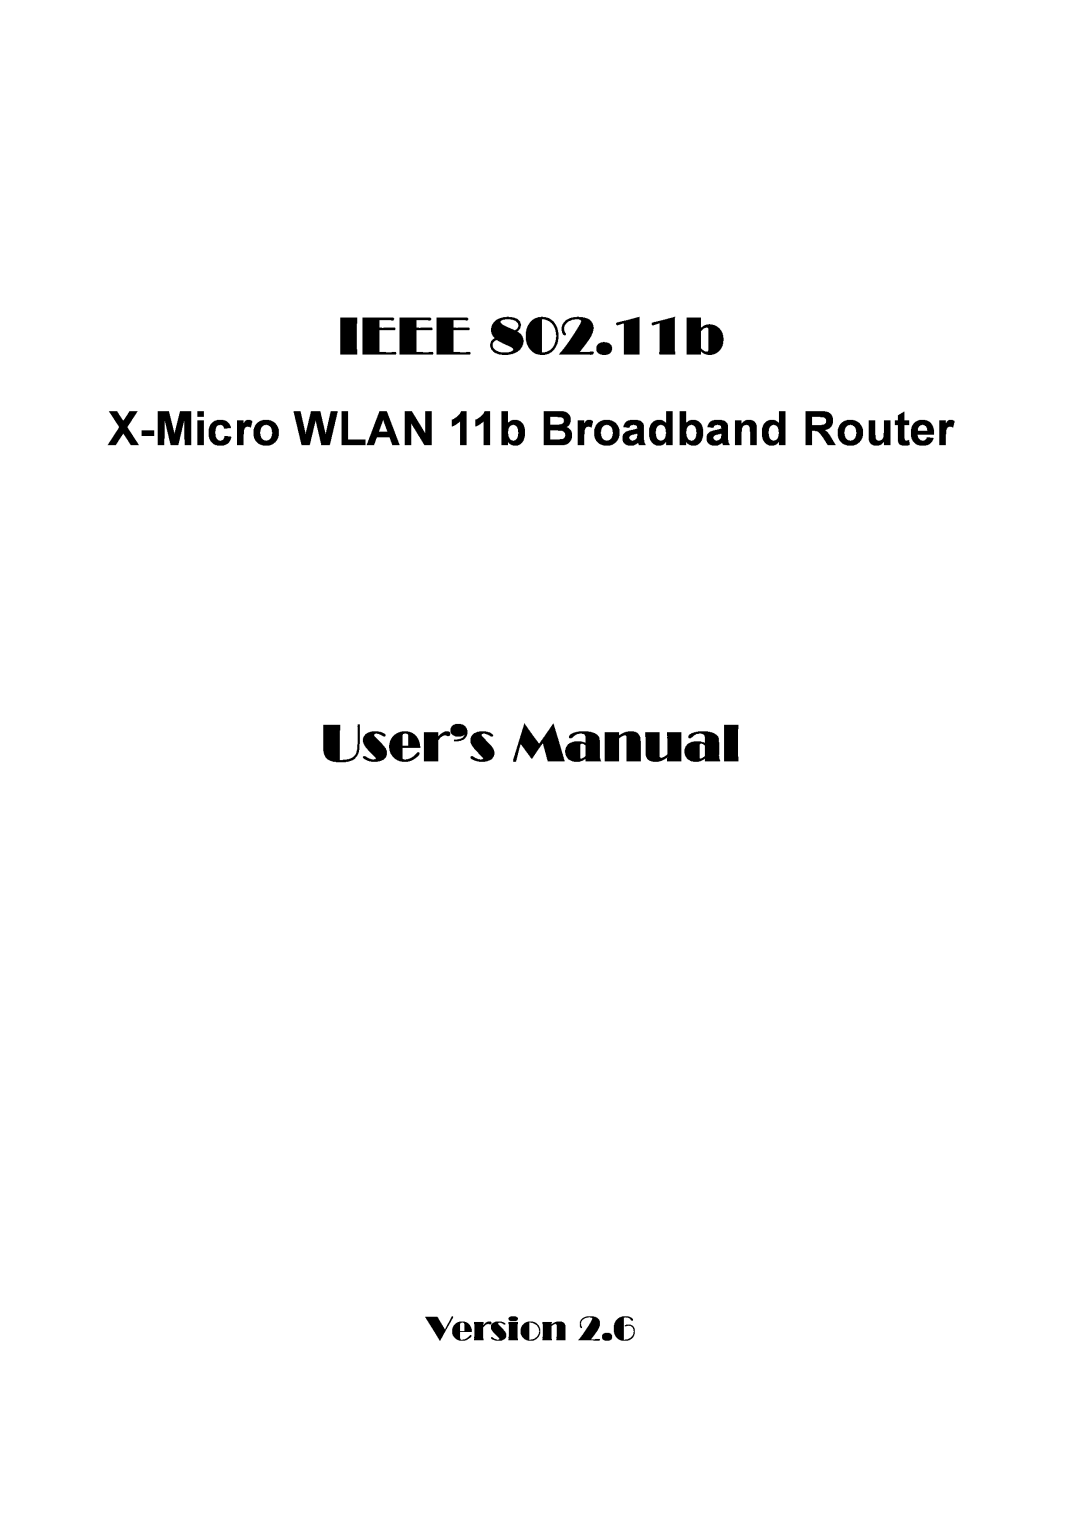 X-Micro Tech IEEE 802.11b user manual User’s Manual, X-Micro WLAN 11b Broadband Router, Version 